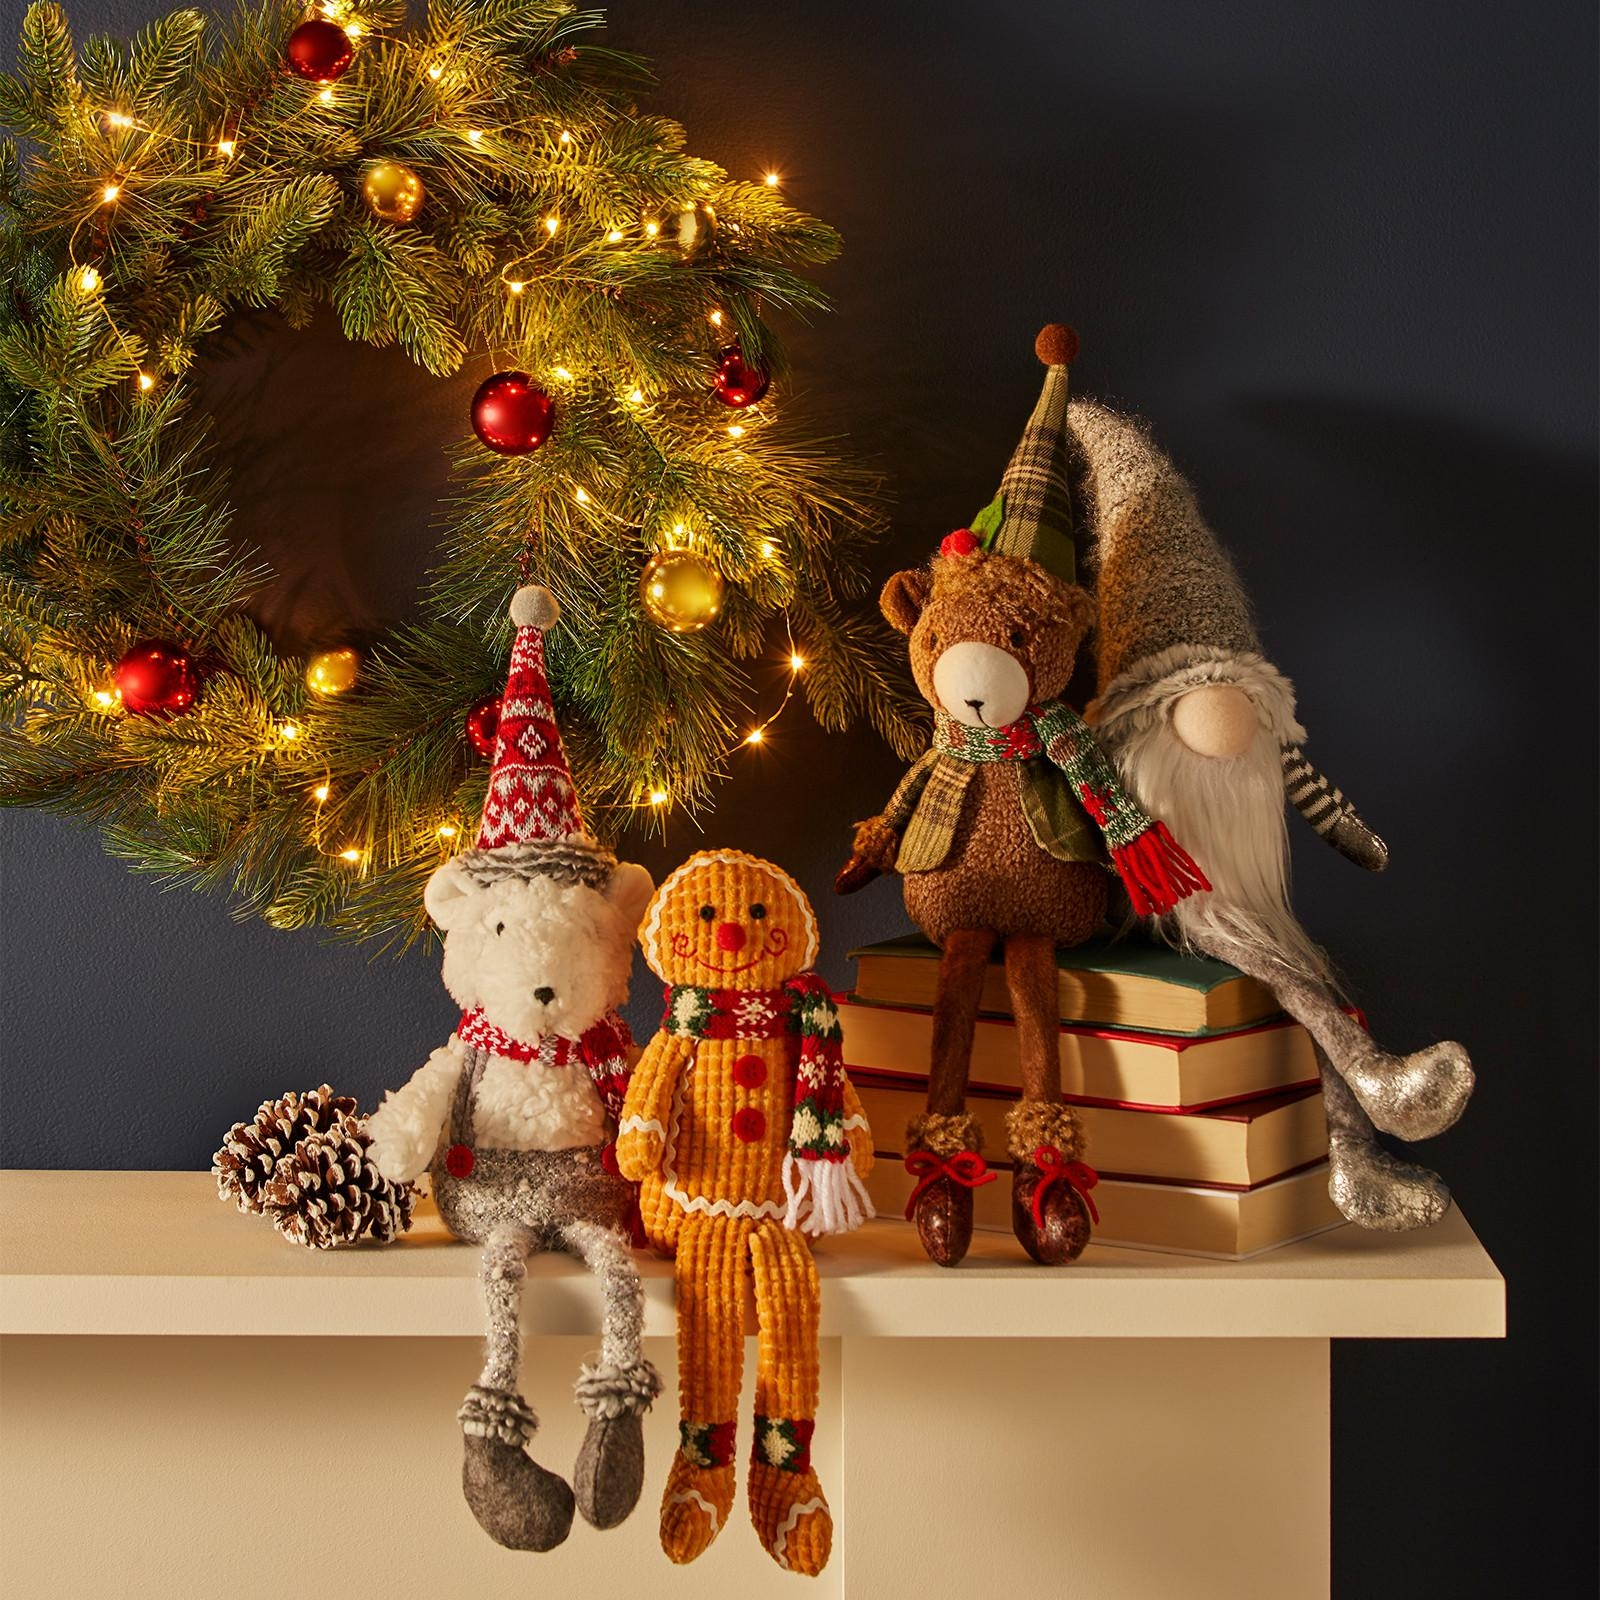 Obraz zawierający choinka, dekoracje świąteczne, zabawka, w pomieszczeniu

Opis wygenerowany automatycznie